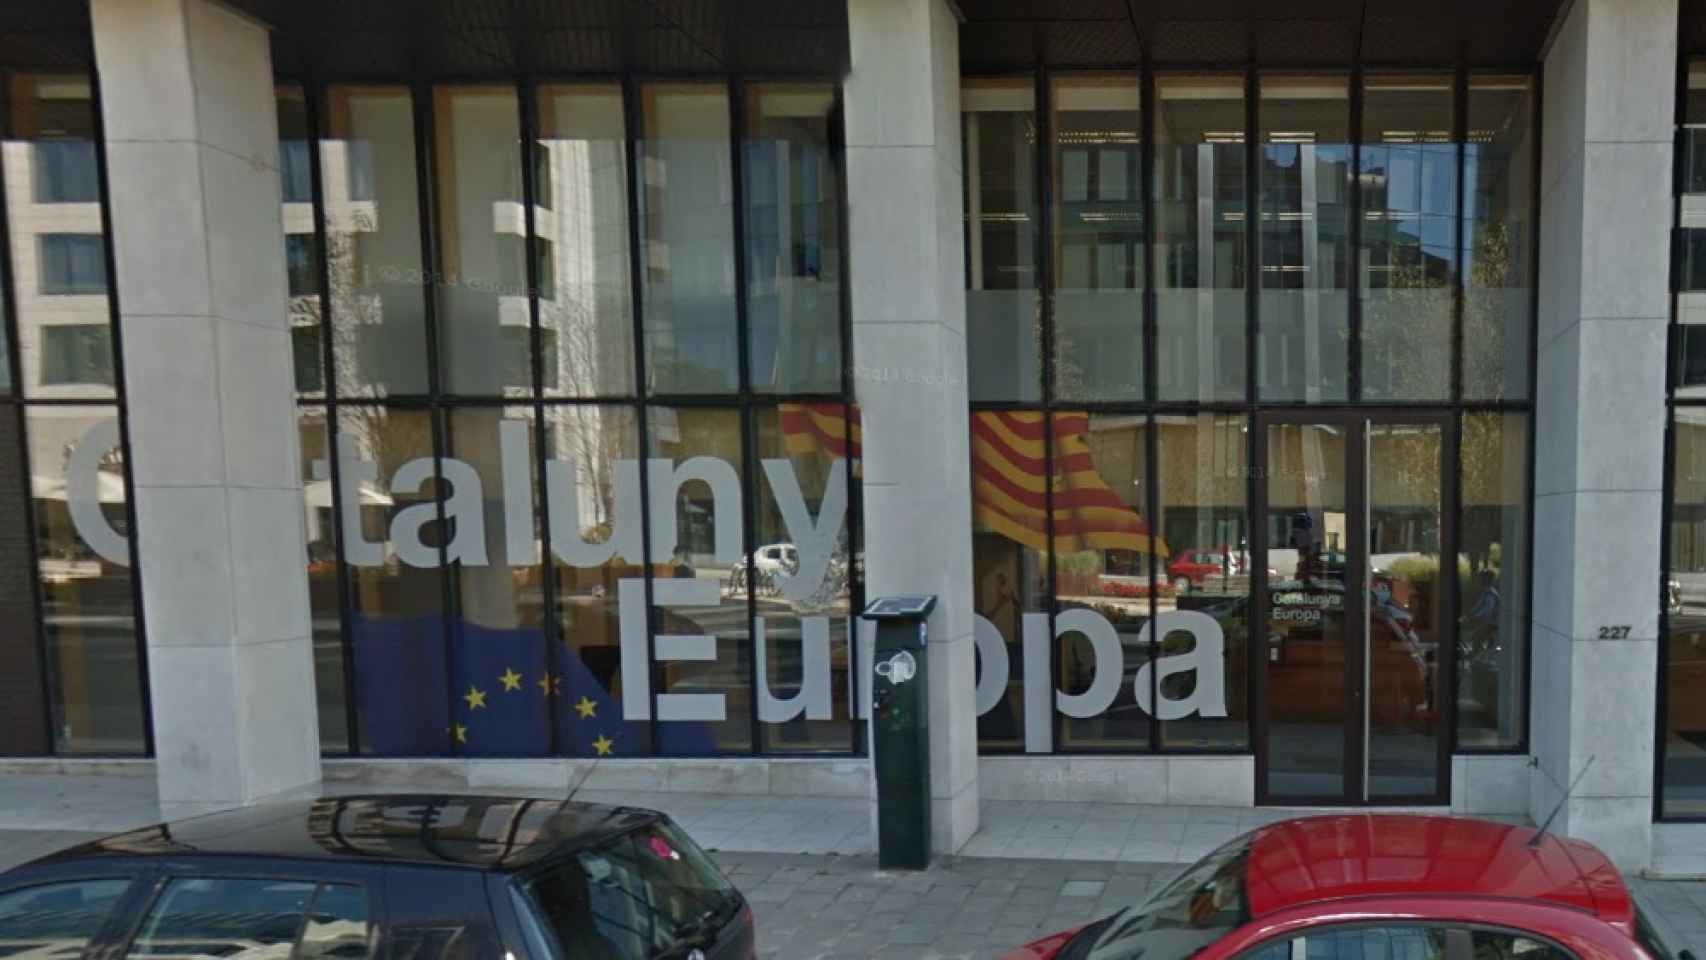 Embajada de Cataluña en Bruselas.